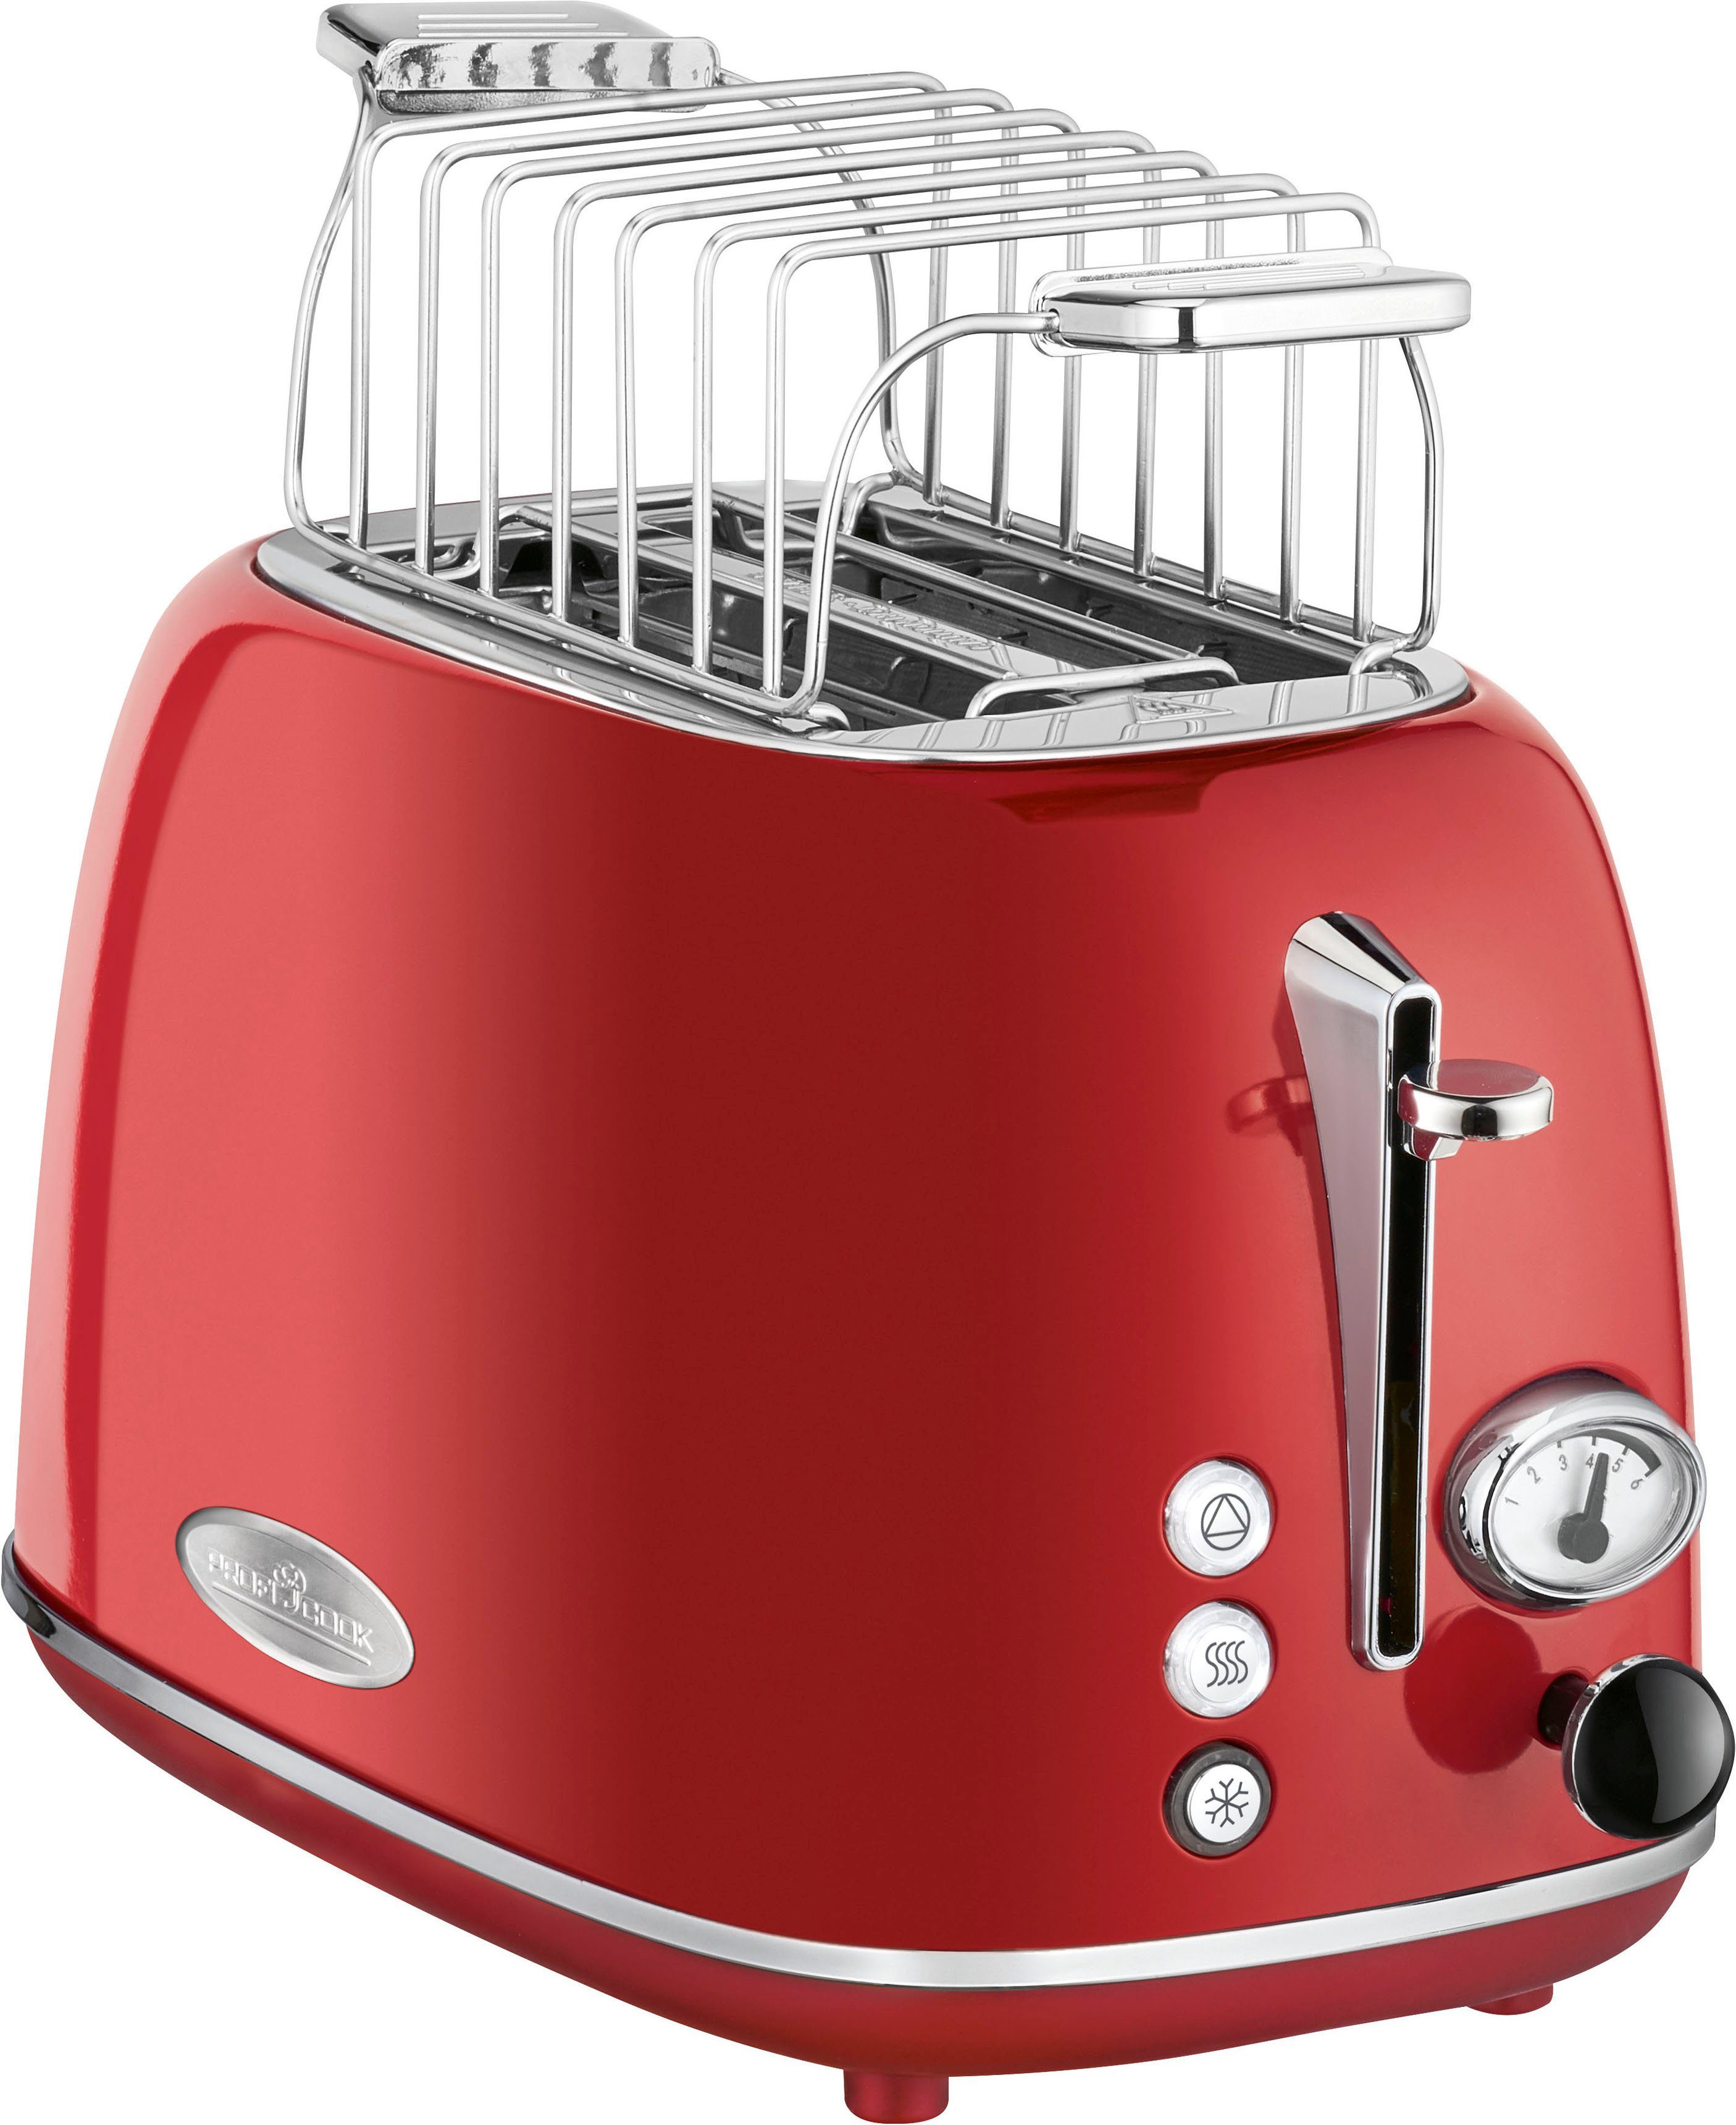 ProfiCook Toaster PC-TA 1193, 2 kurze Schlitze, für 2 Scheiben, 815 W, rot  online kaufen | OTTO